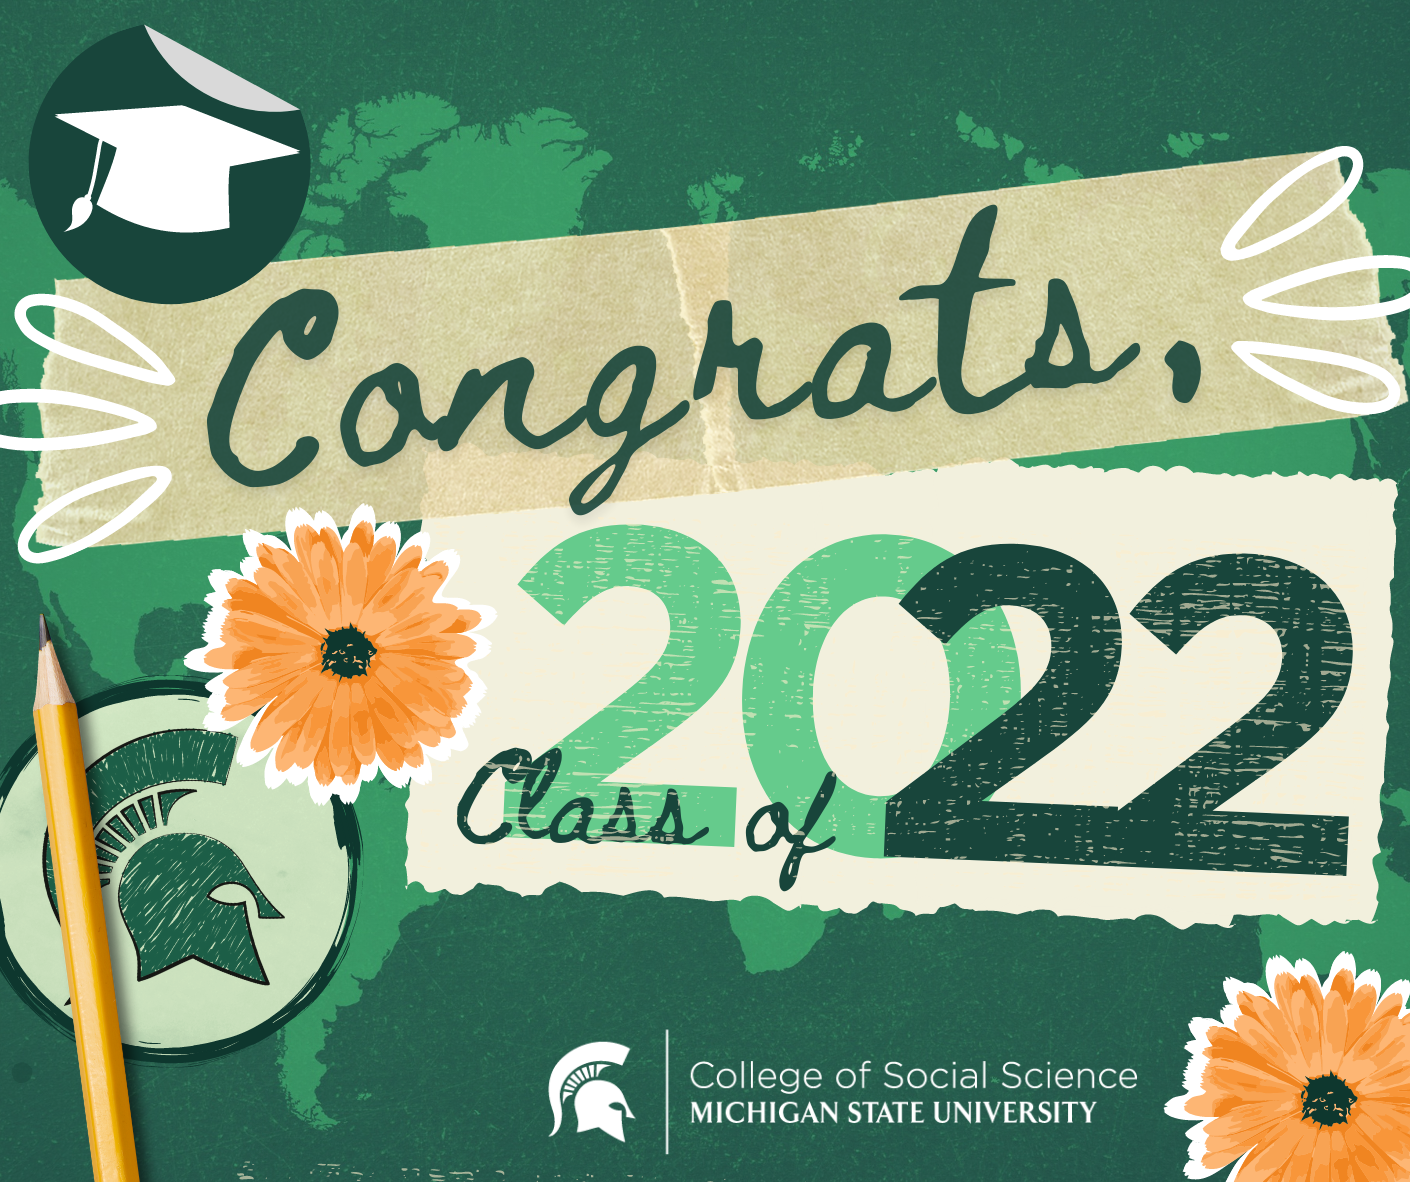 Congratulations 2022 Graduates